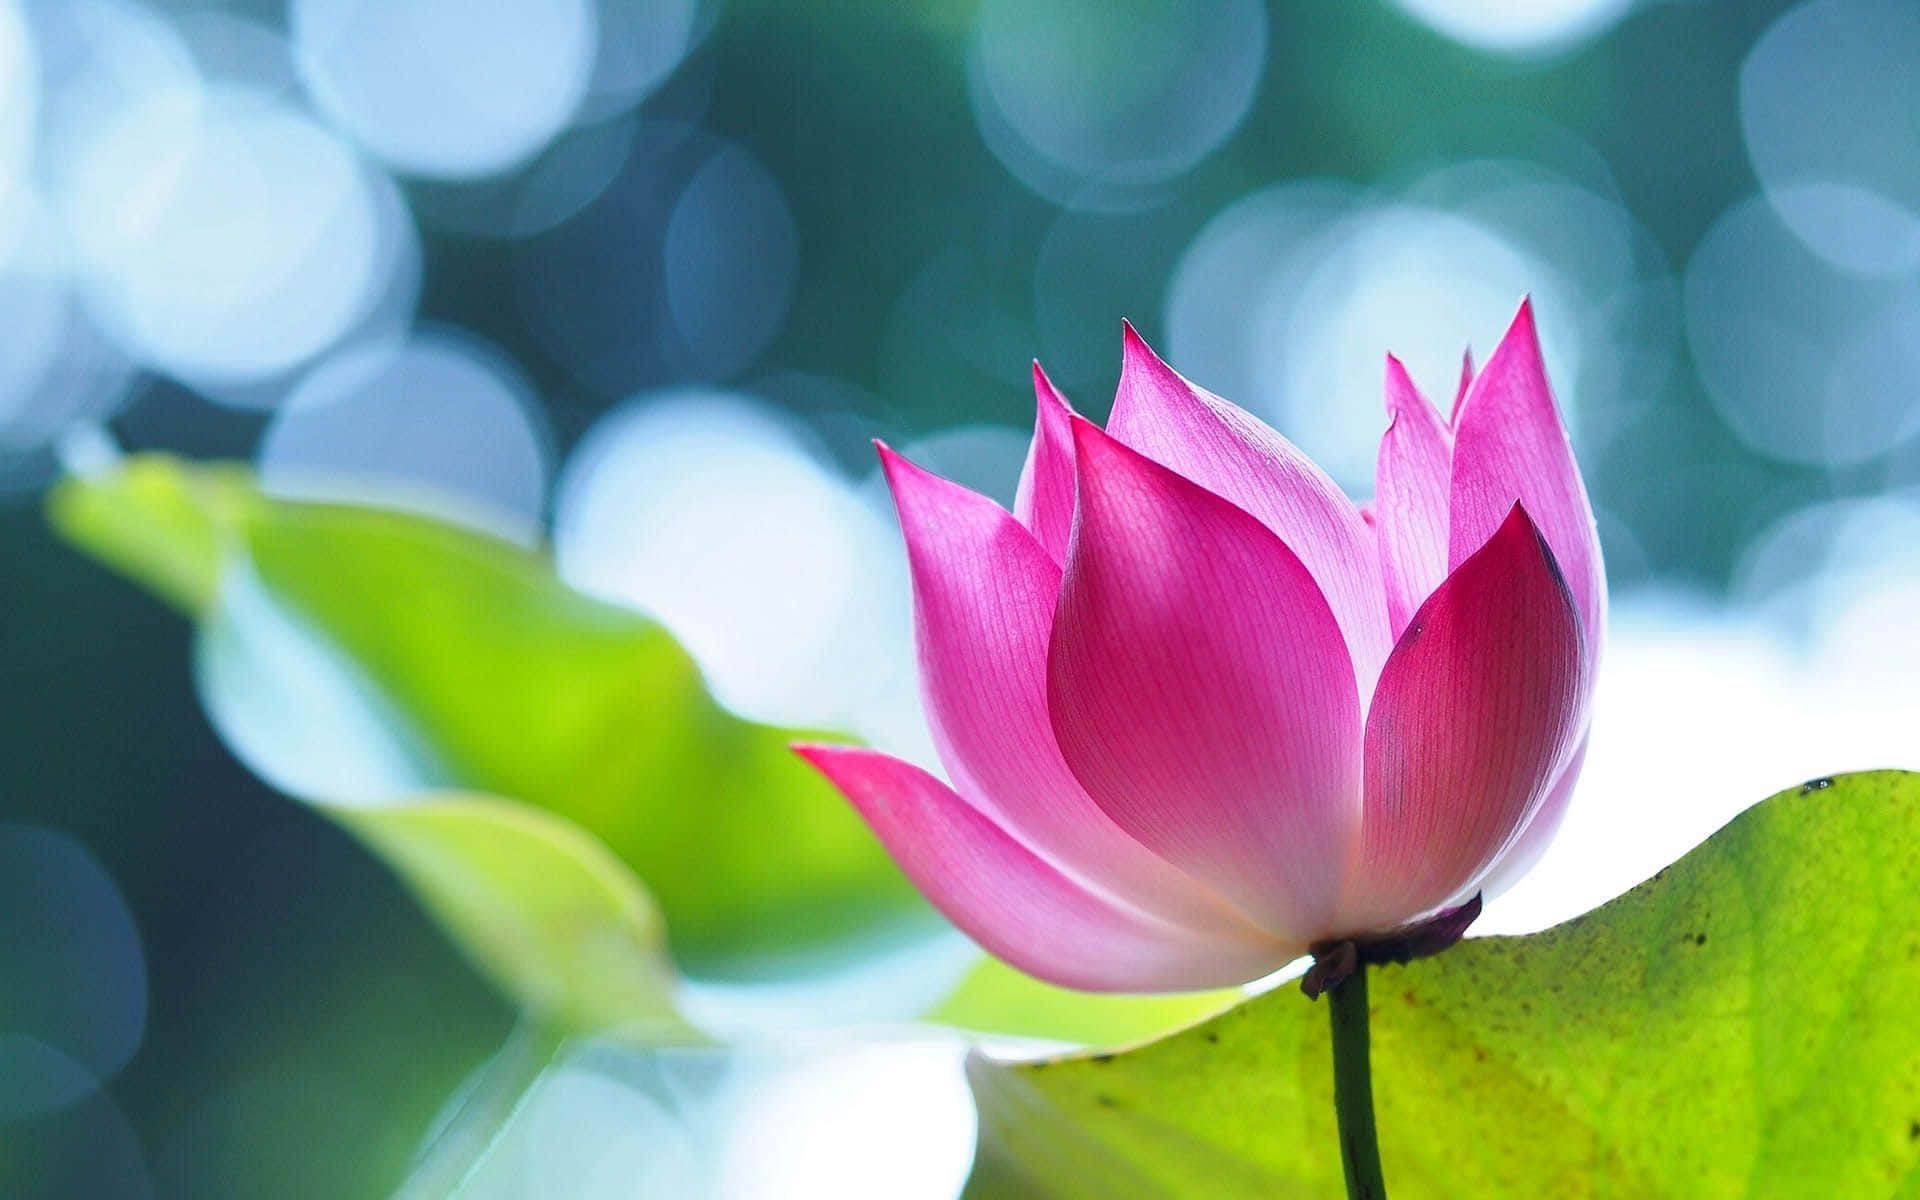 A Pink Lotus Flower in Full Bloom